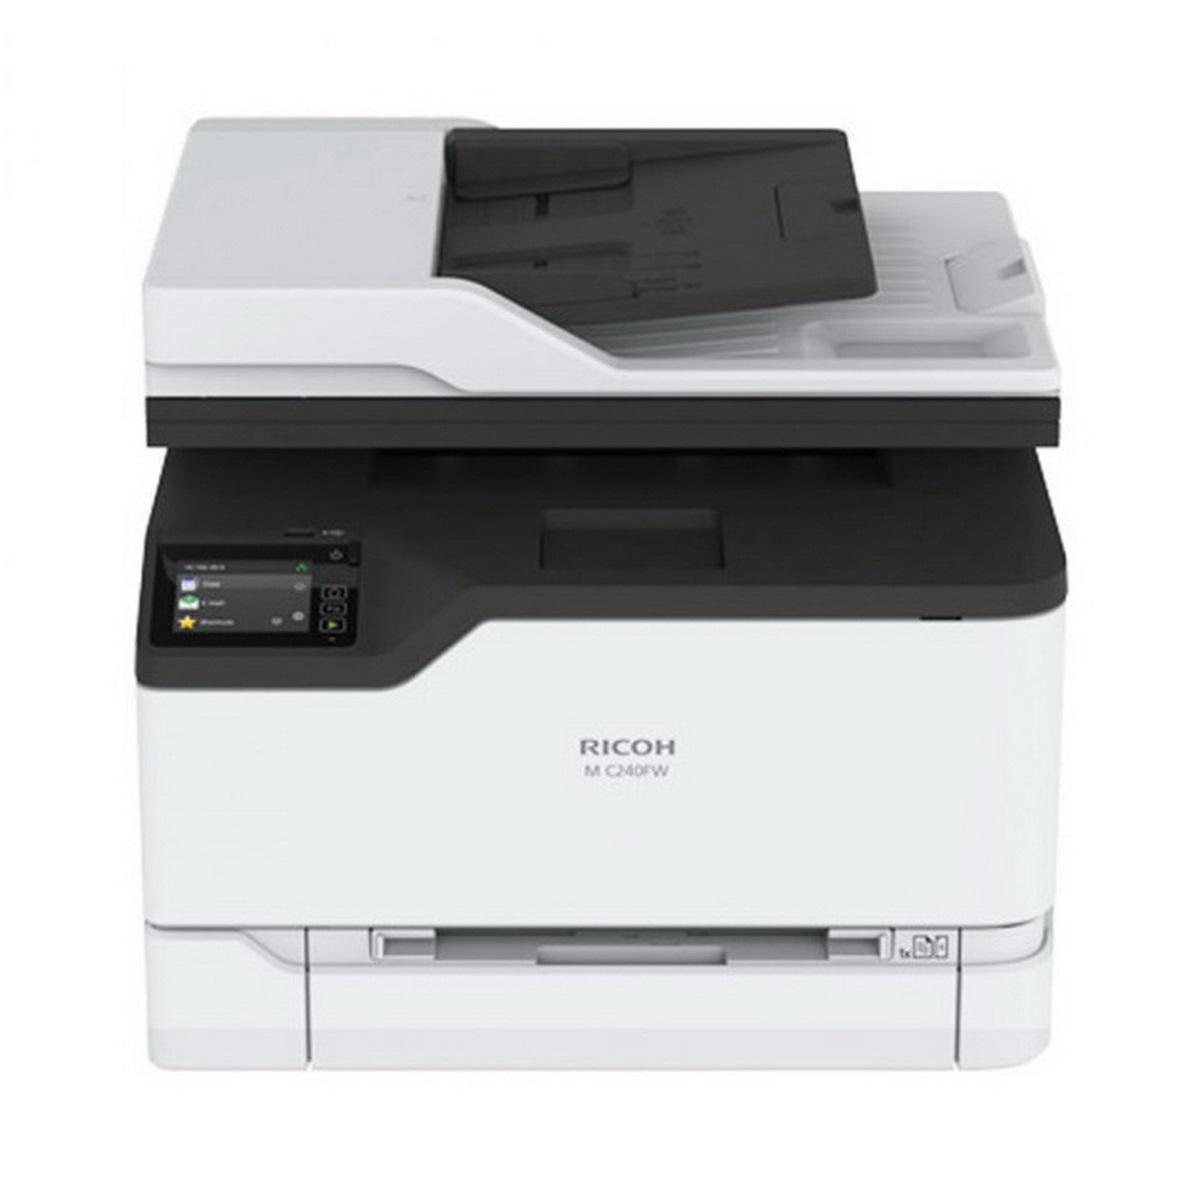 Ricoh M C240FW А4, Цветное лазерное МФУ, 24 стр/мин, факс, принтер, сканер, копир, Wi-Fi, дуплекс, сеть,